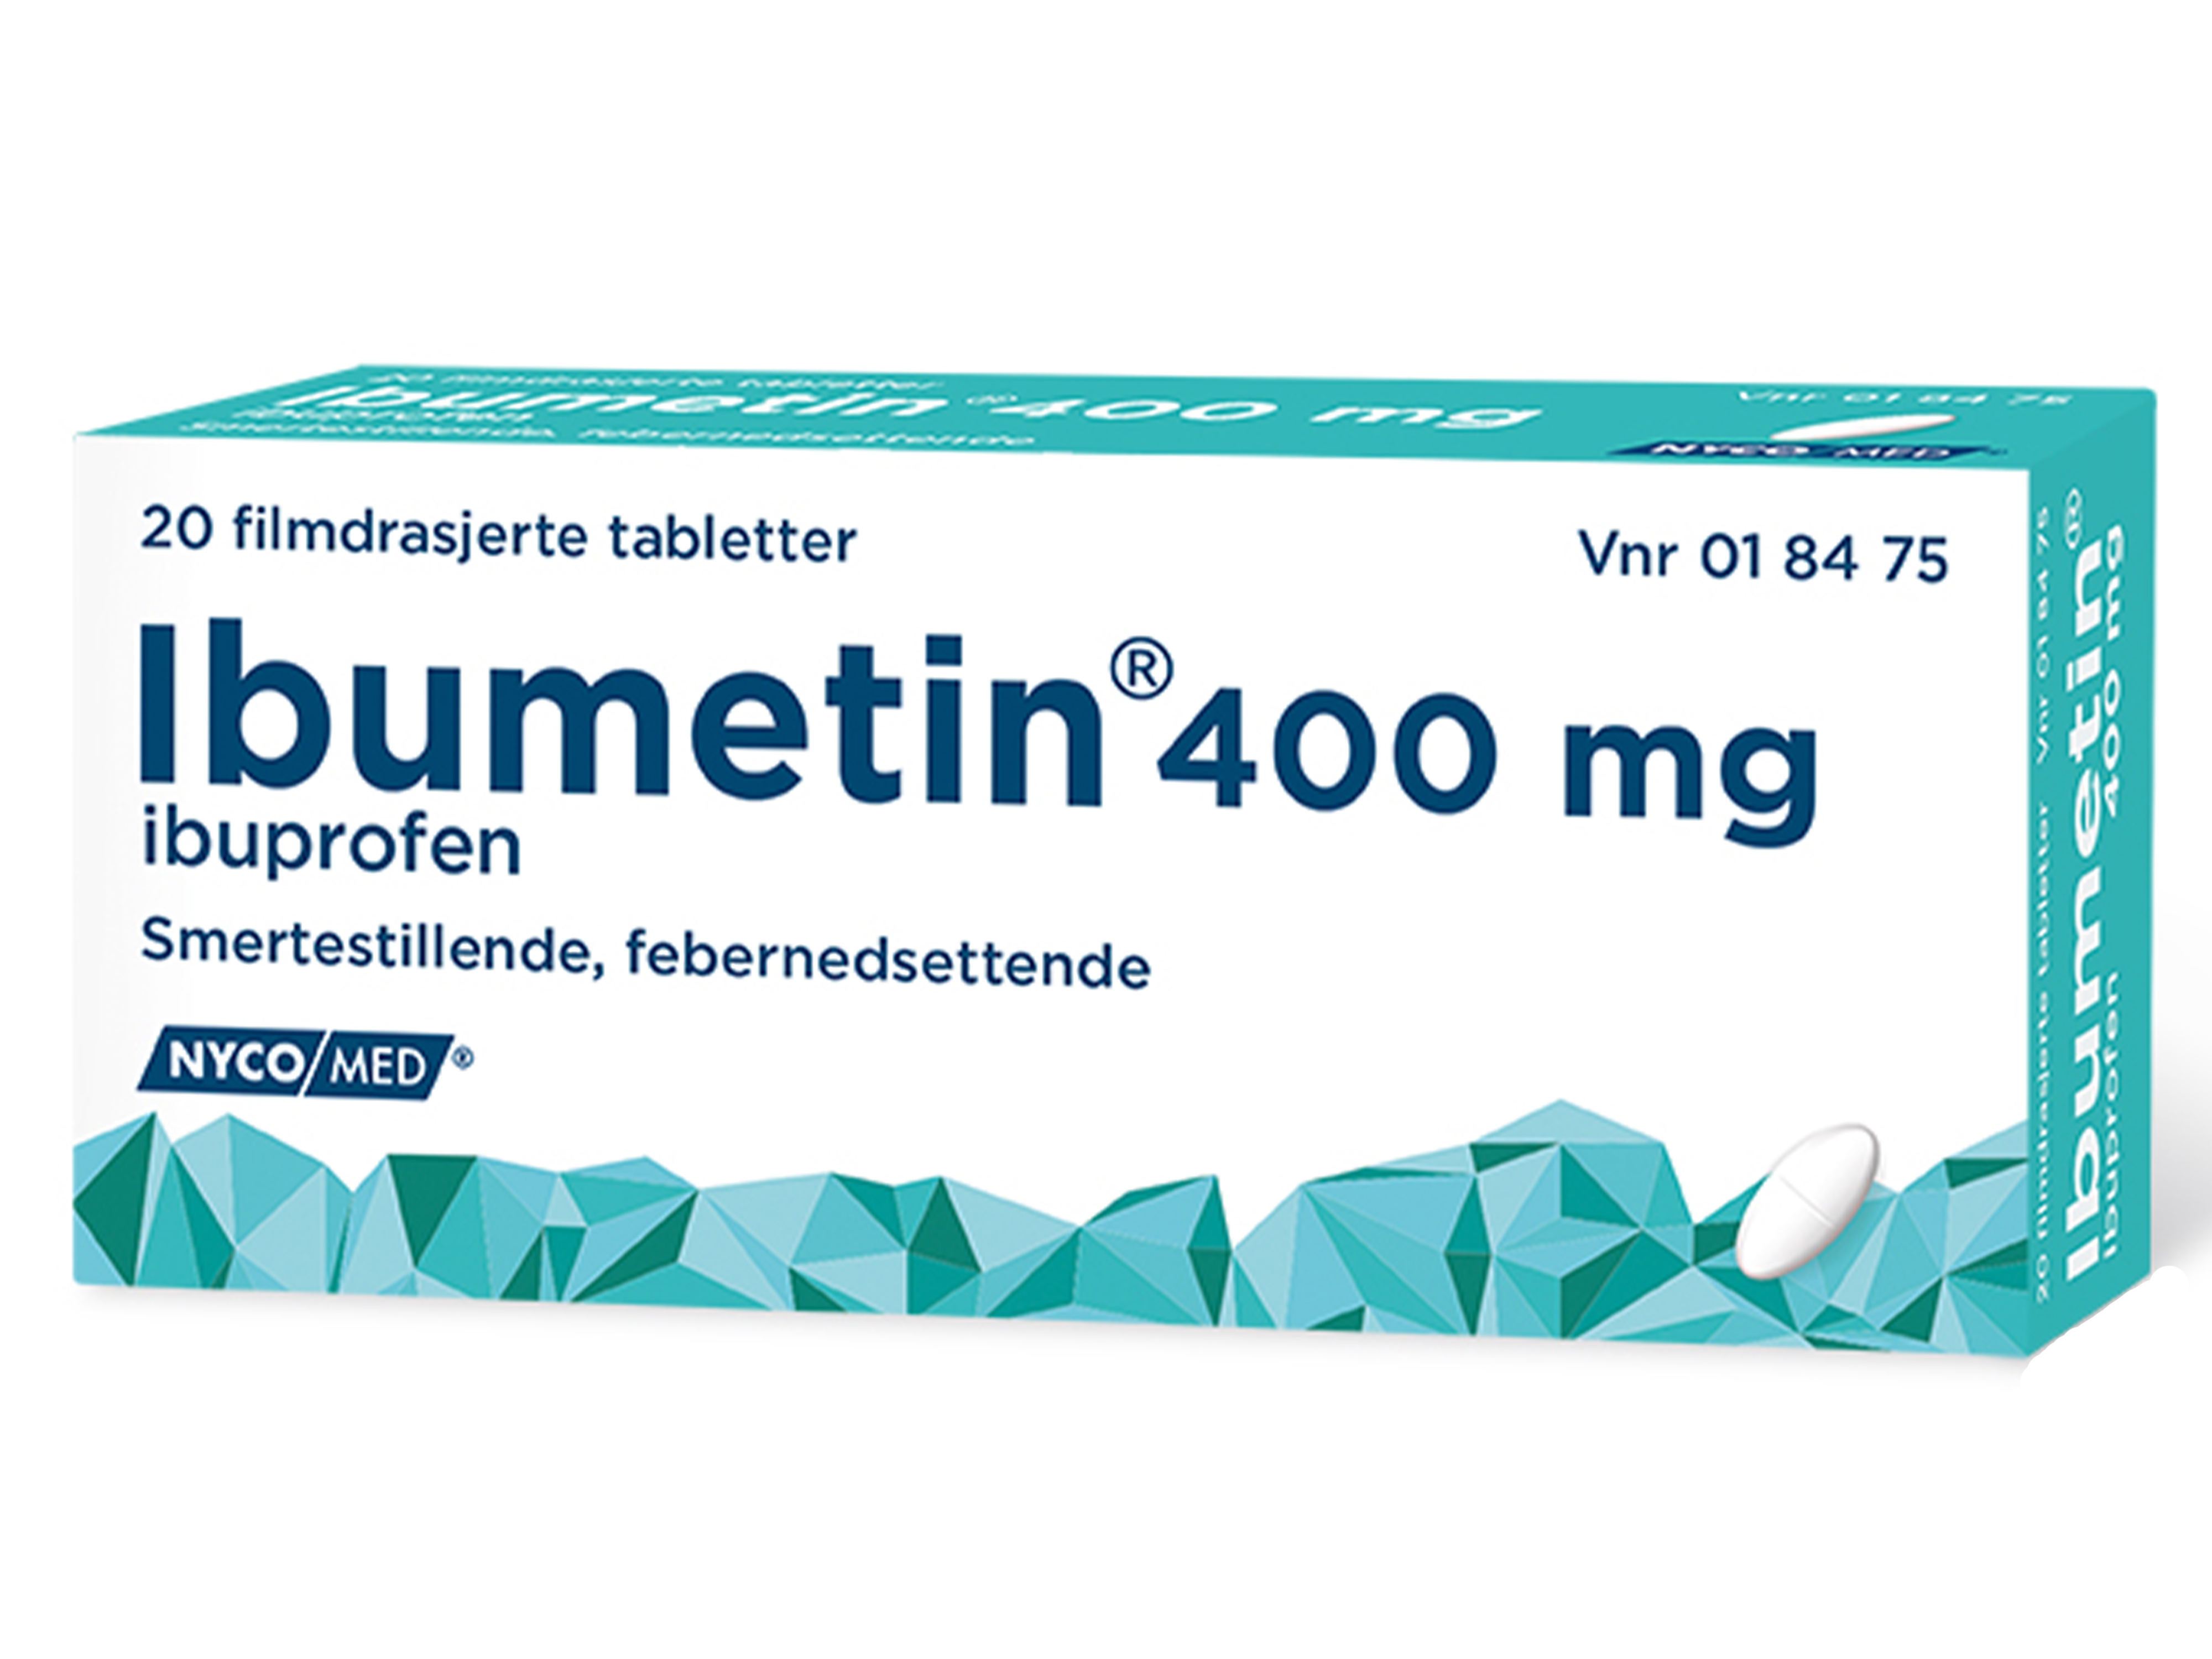 Ibumetin Tabletter 400 mg, 20 stk. på brett